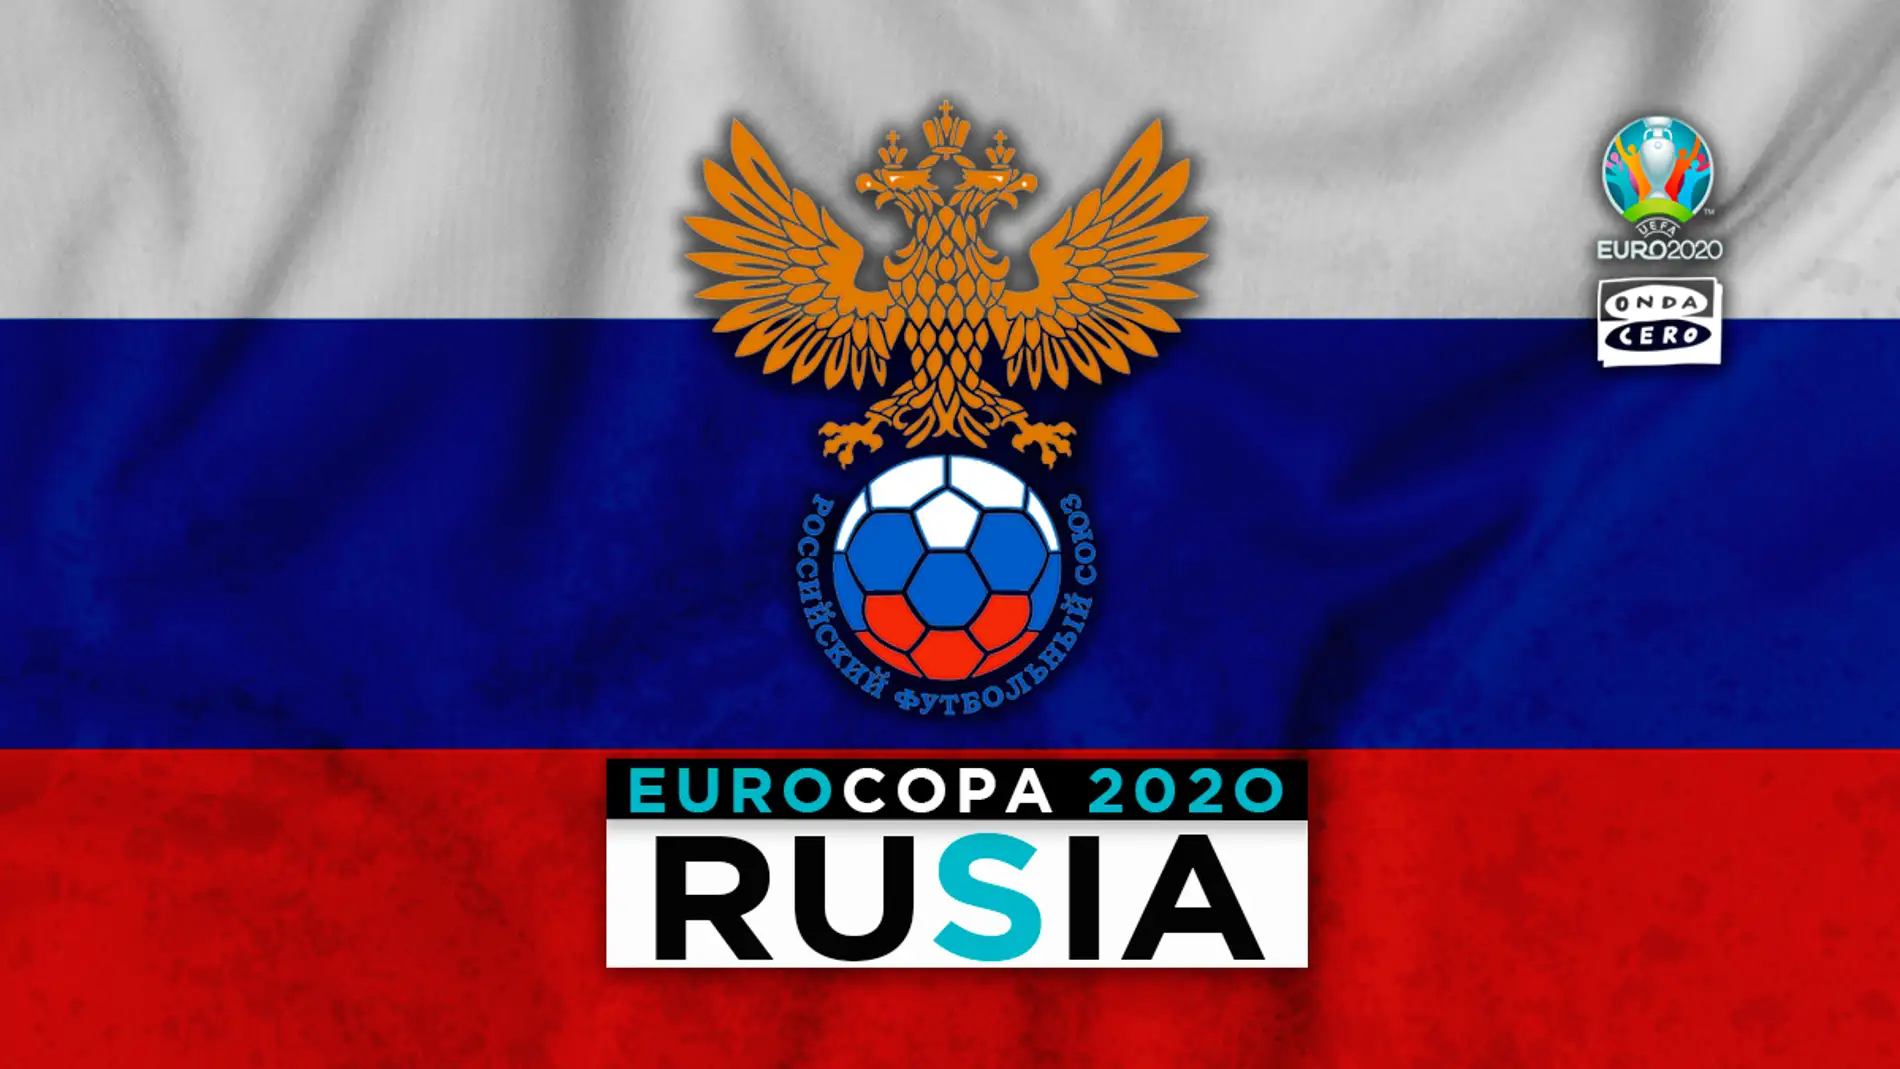 Rusia en la Eurocopa: alineación probable, convocatoria y lista completa de jugadores